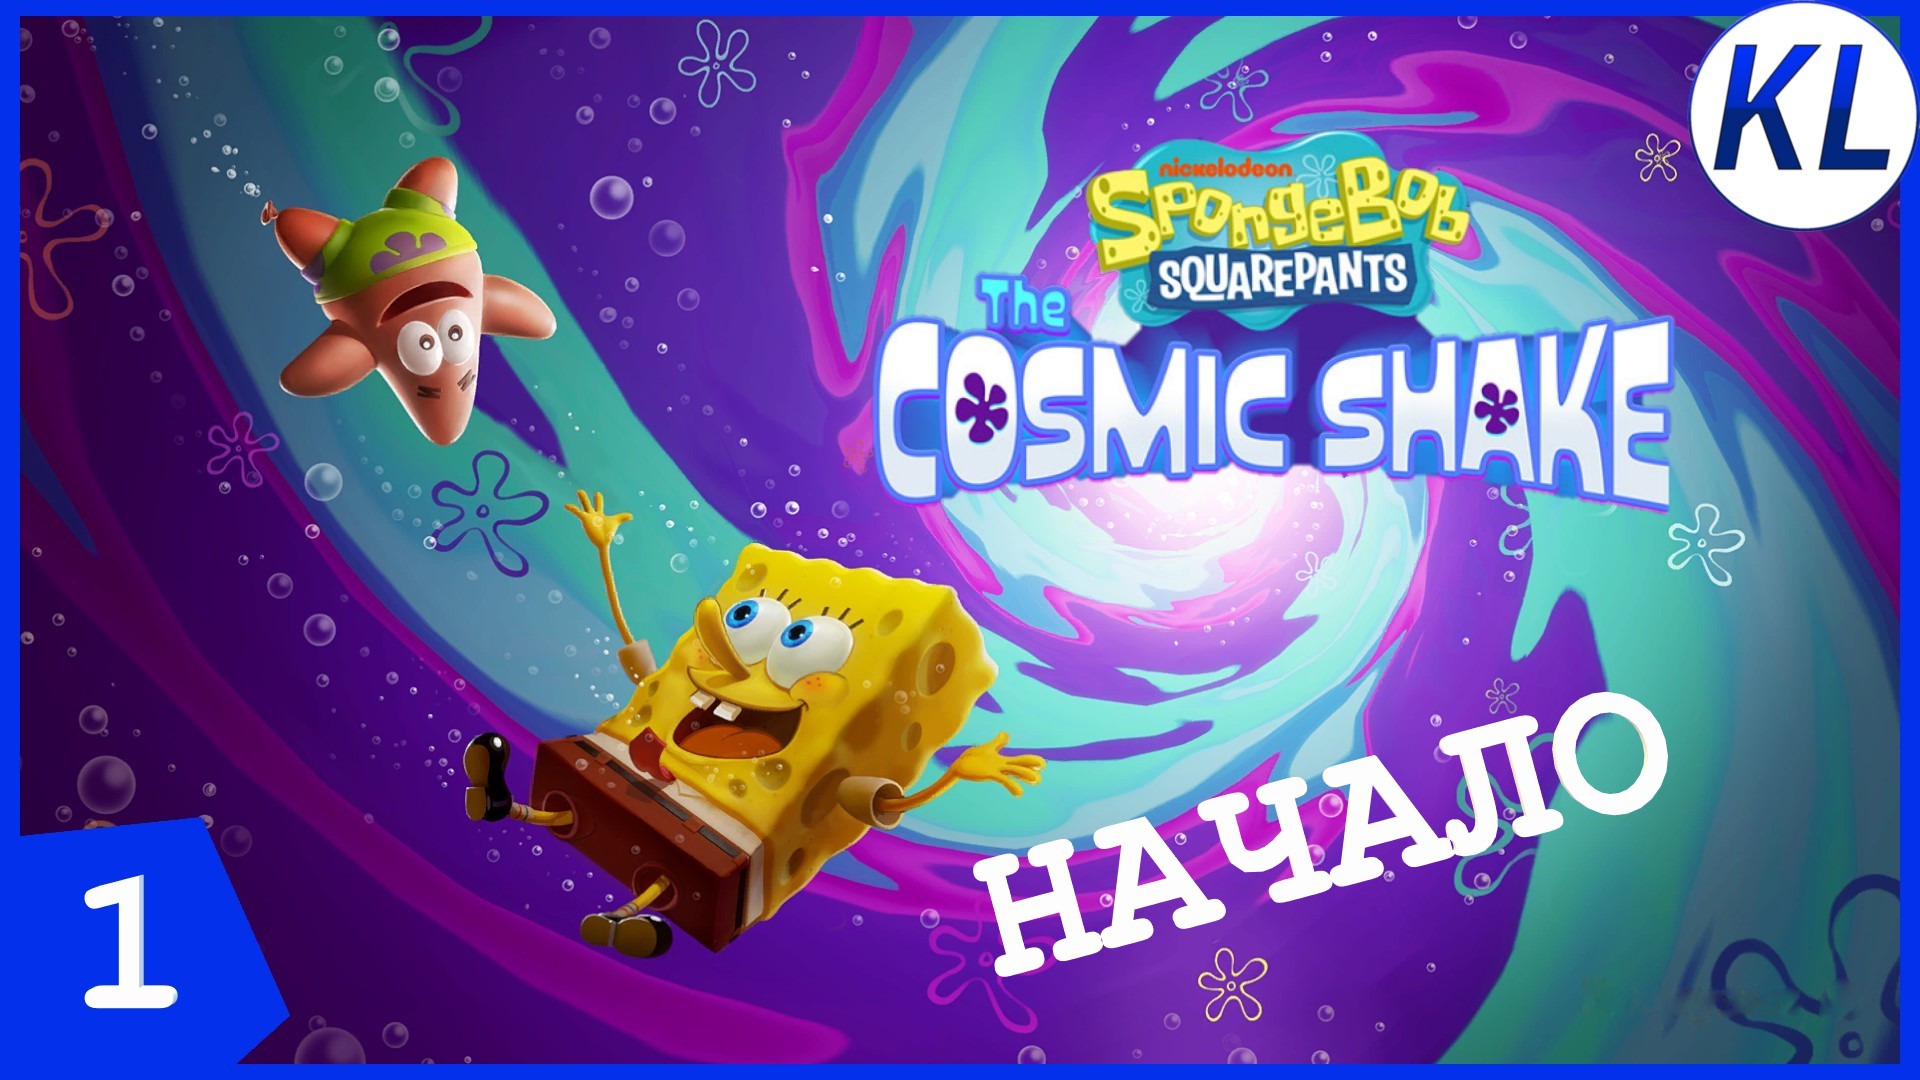 СЛЁЗЫ РУСАЛКИ РАЗРУШИЛИ МИР ГУБКИ БОБА! SpongeBob SquarePants: The Cosmic Shake #1